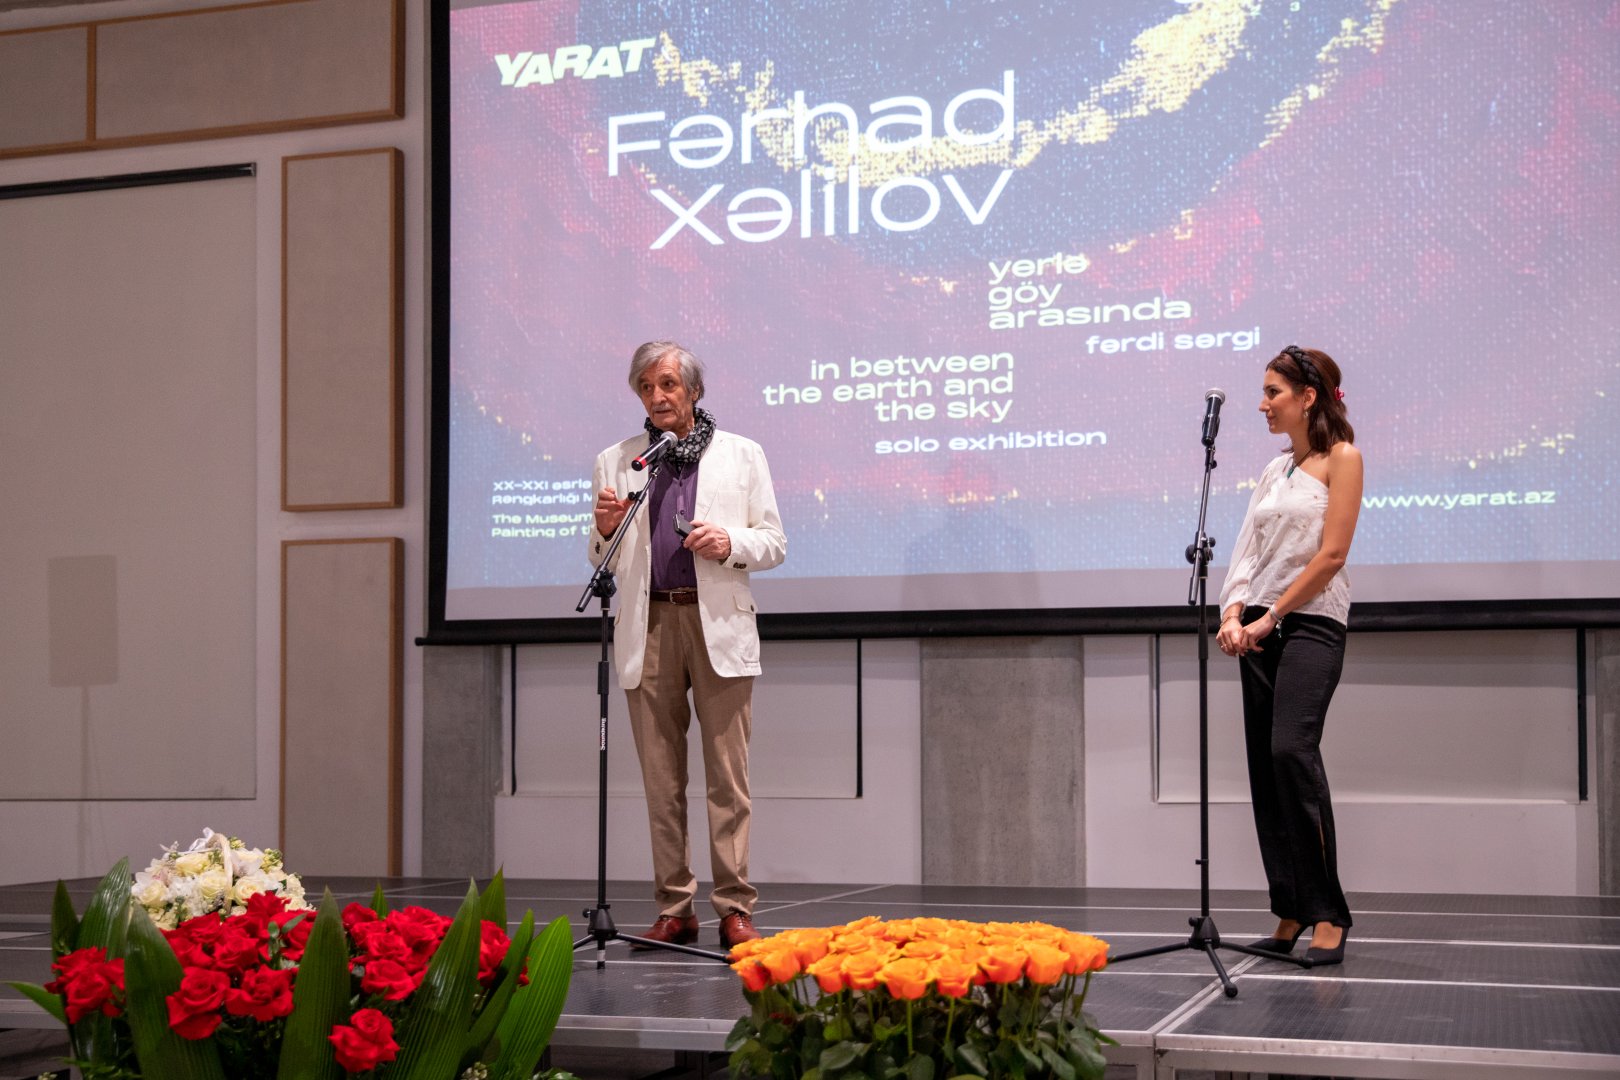 YARAT организовал выставку народного художника Фархада Халилова "Между небом и землей" (ФОТО)